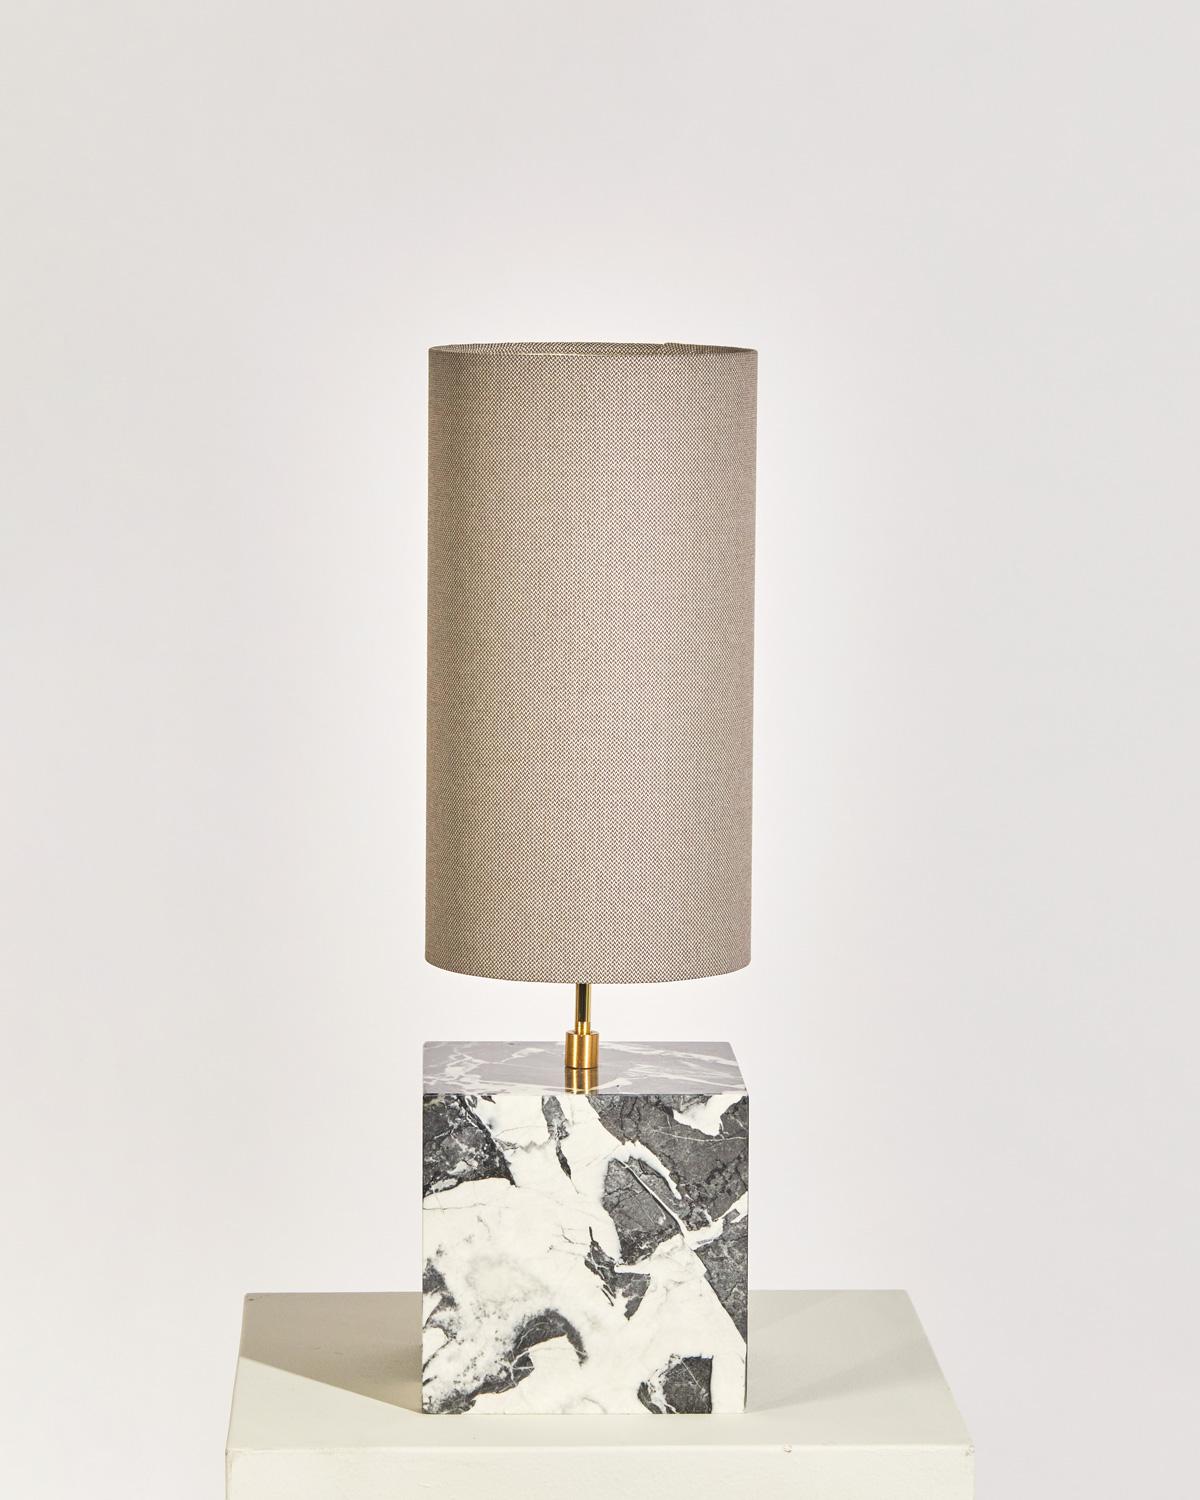 La lampe à poser Coexist se compose d'une base en cube de marbre et d'un abat-jour en tissu recyclé.

La lampe sert de pièce centrale sculpturale pour n'importe quelle pièce, émettant une lumière douce et chaude qui attire le spectateur dans les